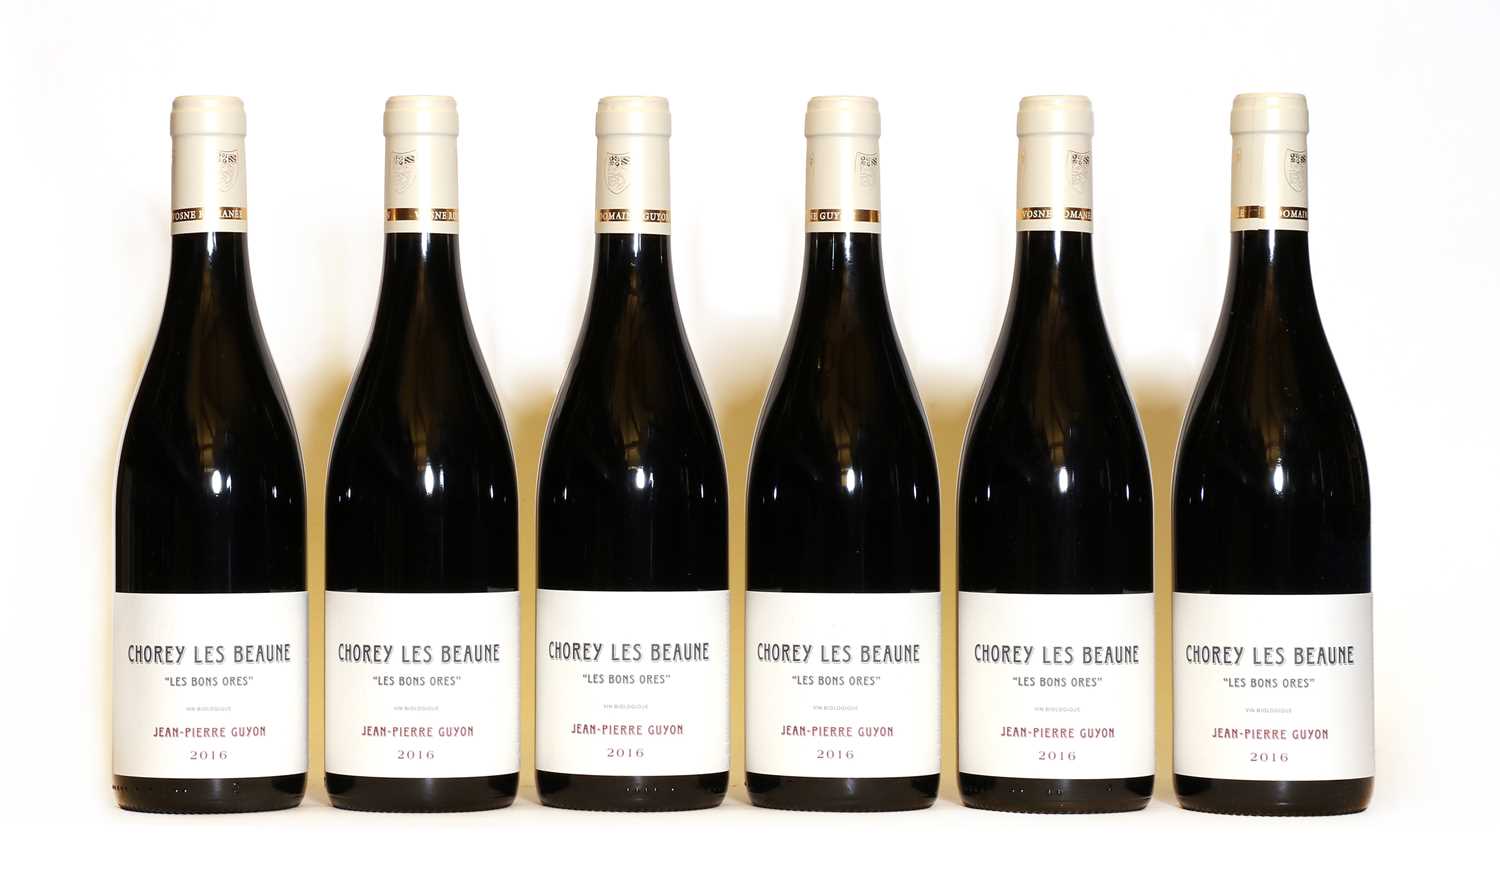 Lot 68 - Les Bons Ores, Chorey Les Beaune, Domaine Guyon, 2016, six bottles (boxed)